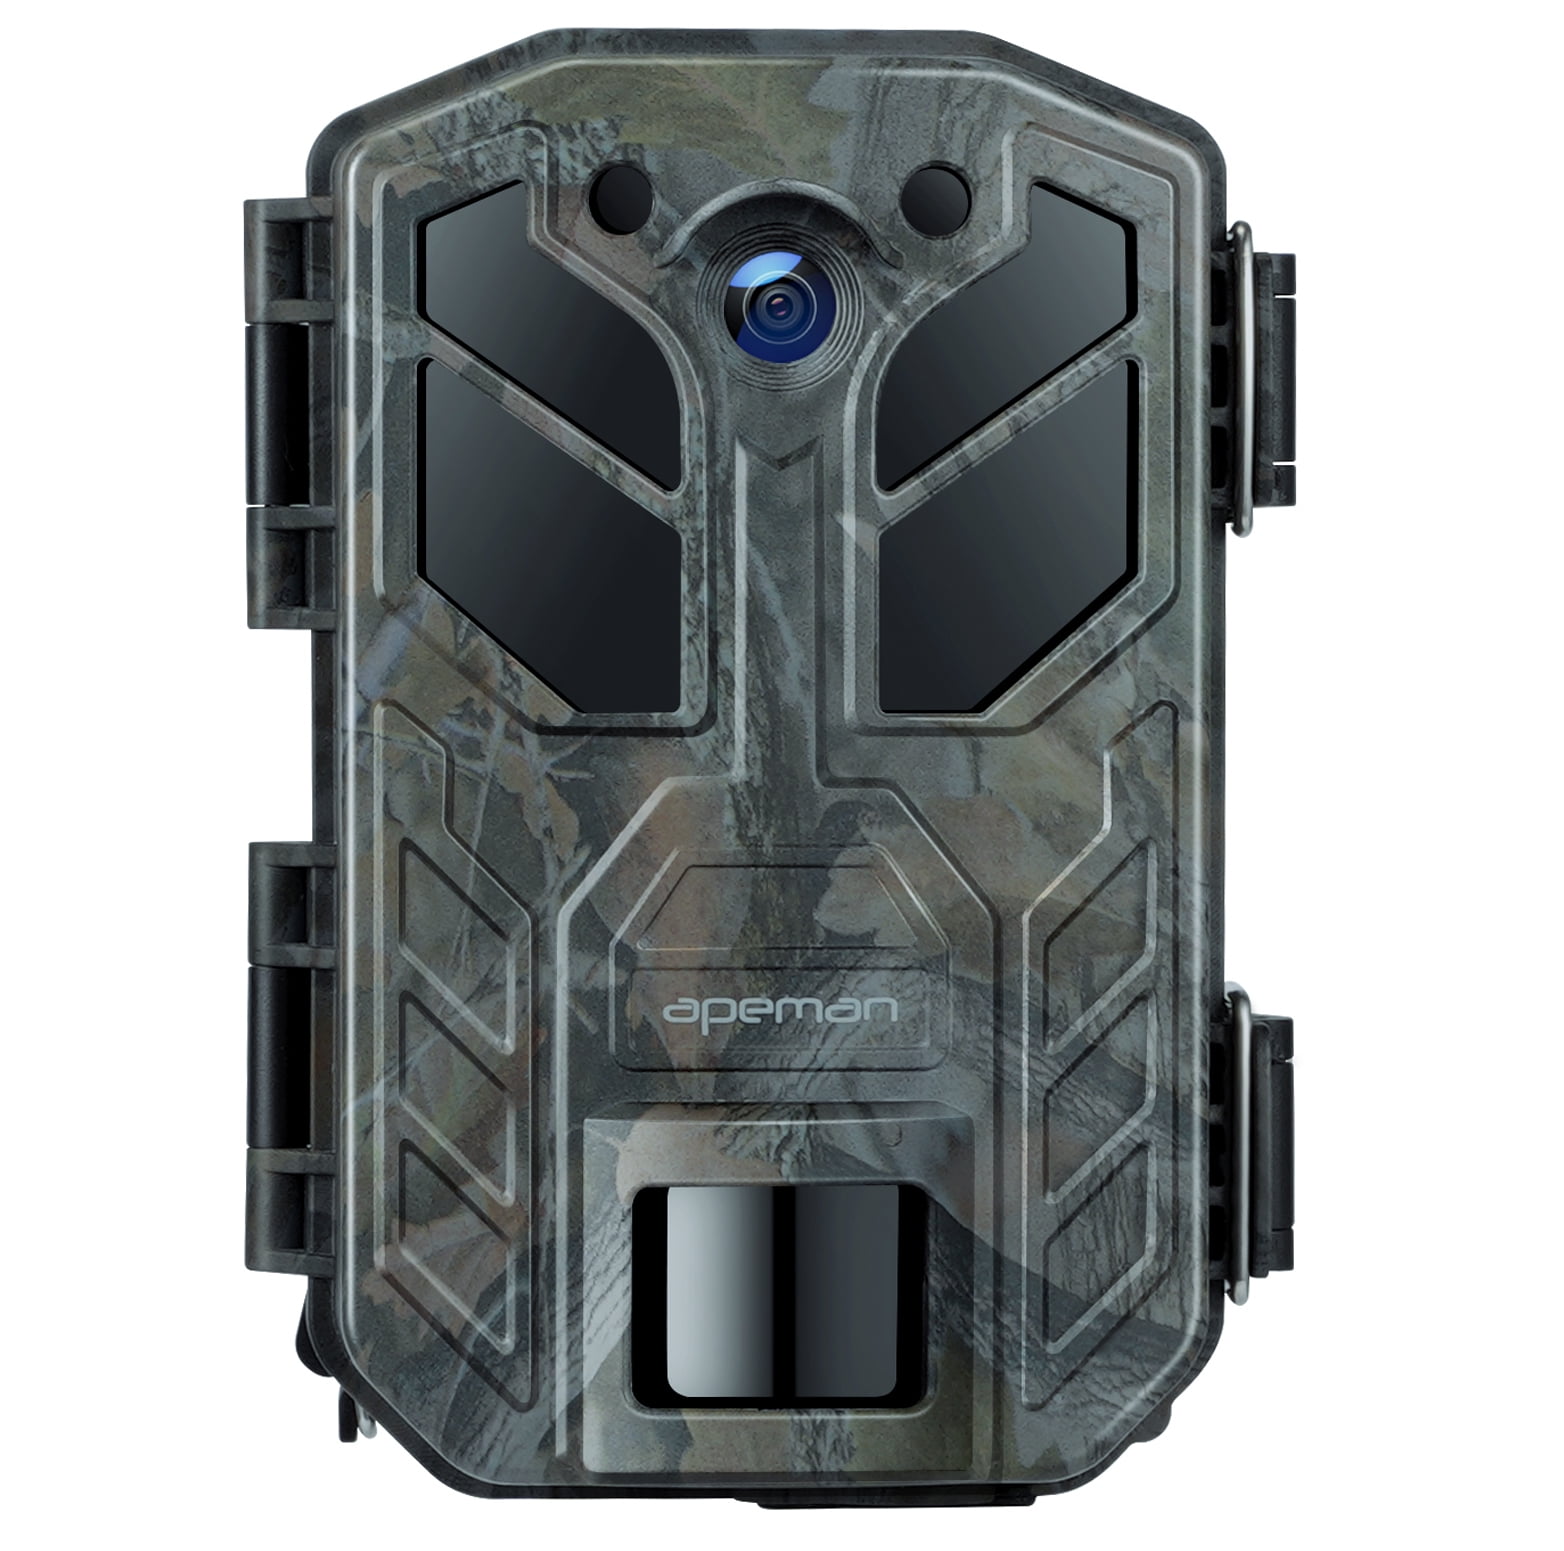 APEMAN Wildlife Trail Fotocamera Trap 20MP 1080P con visione notturna a infrarossi fino a 